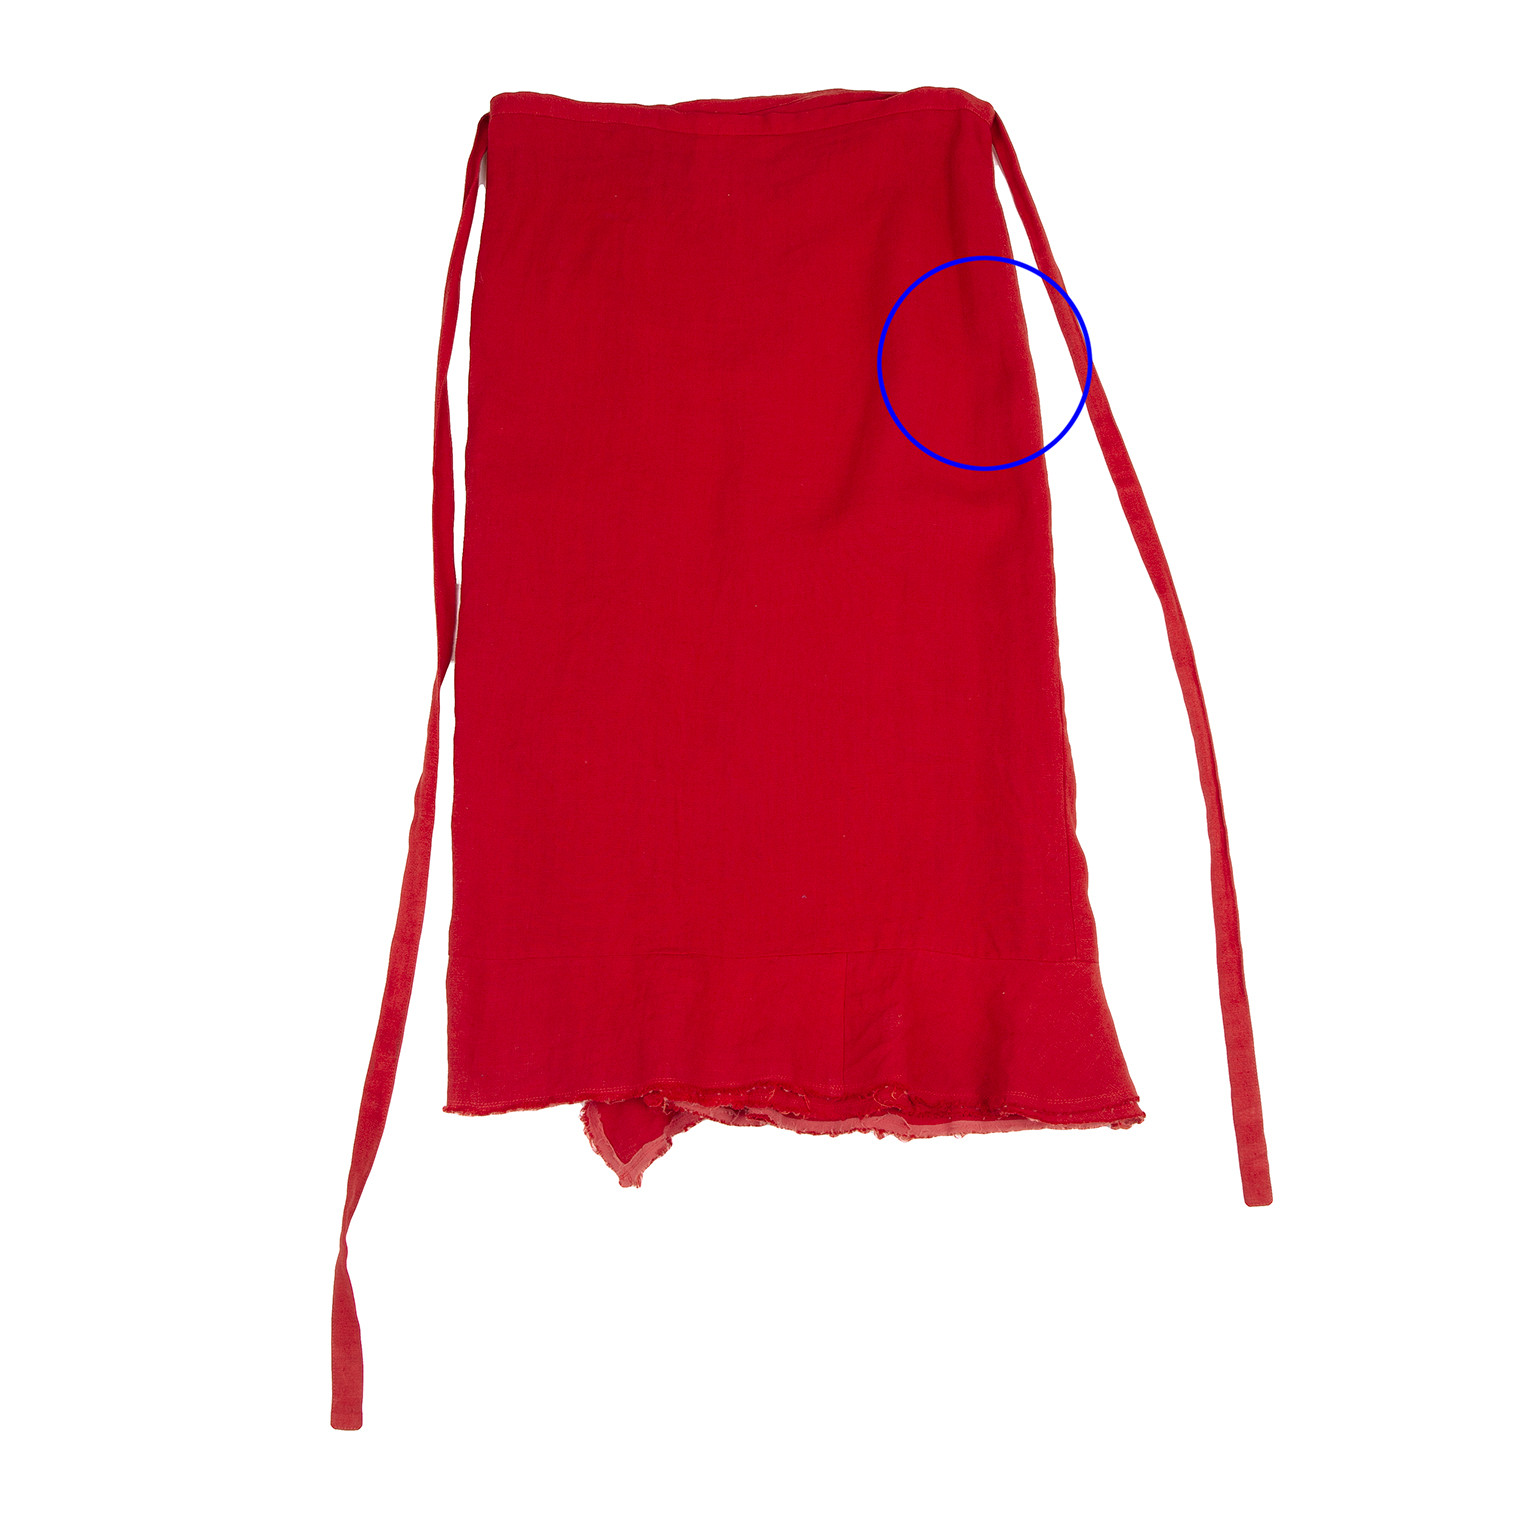 コムデギャルソンCOMME des GARCONS リネン製品染めラップスカート 赤M位